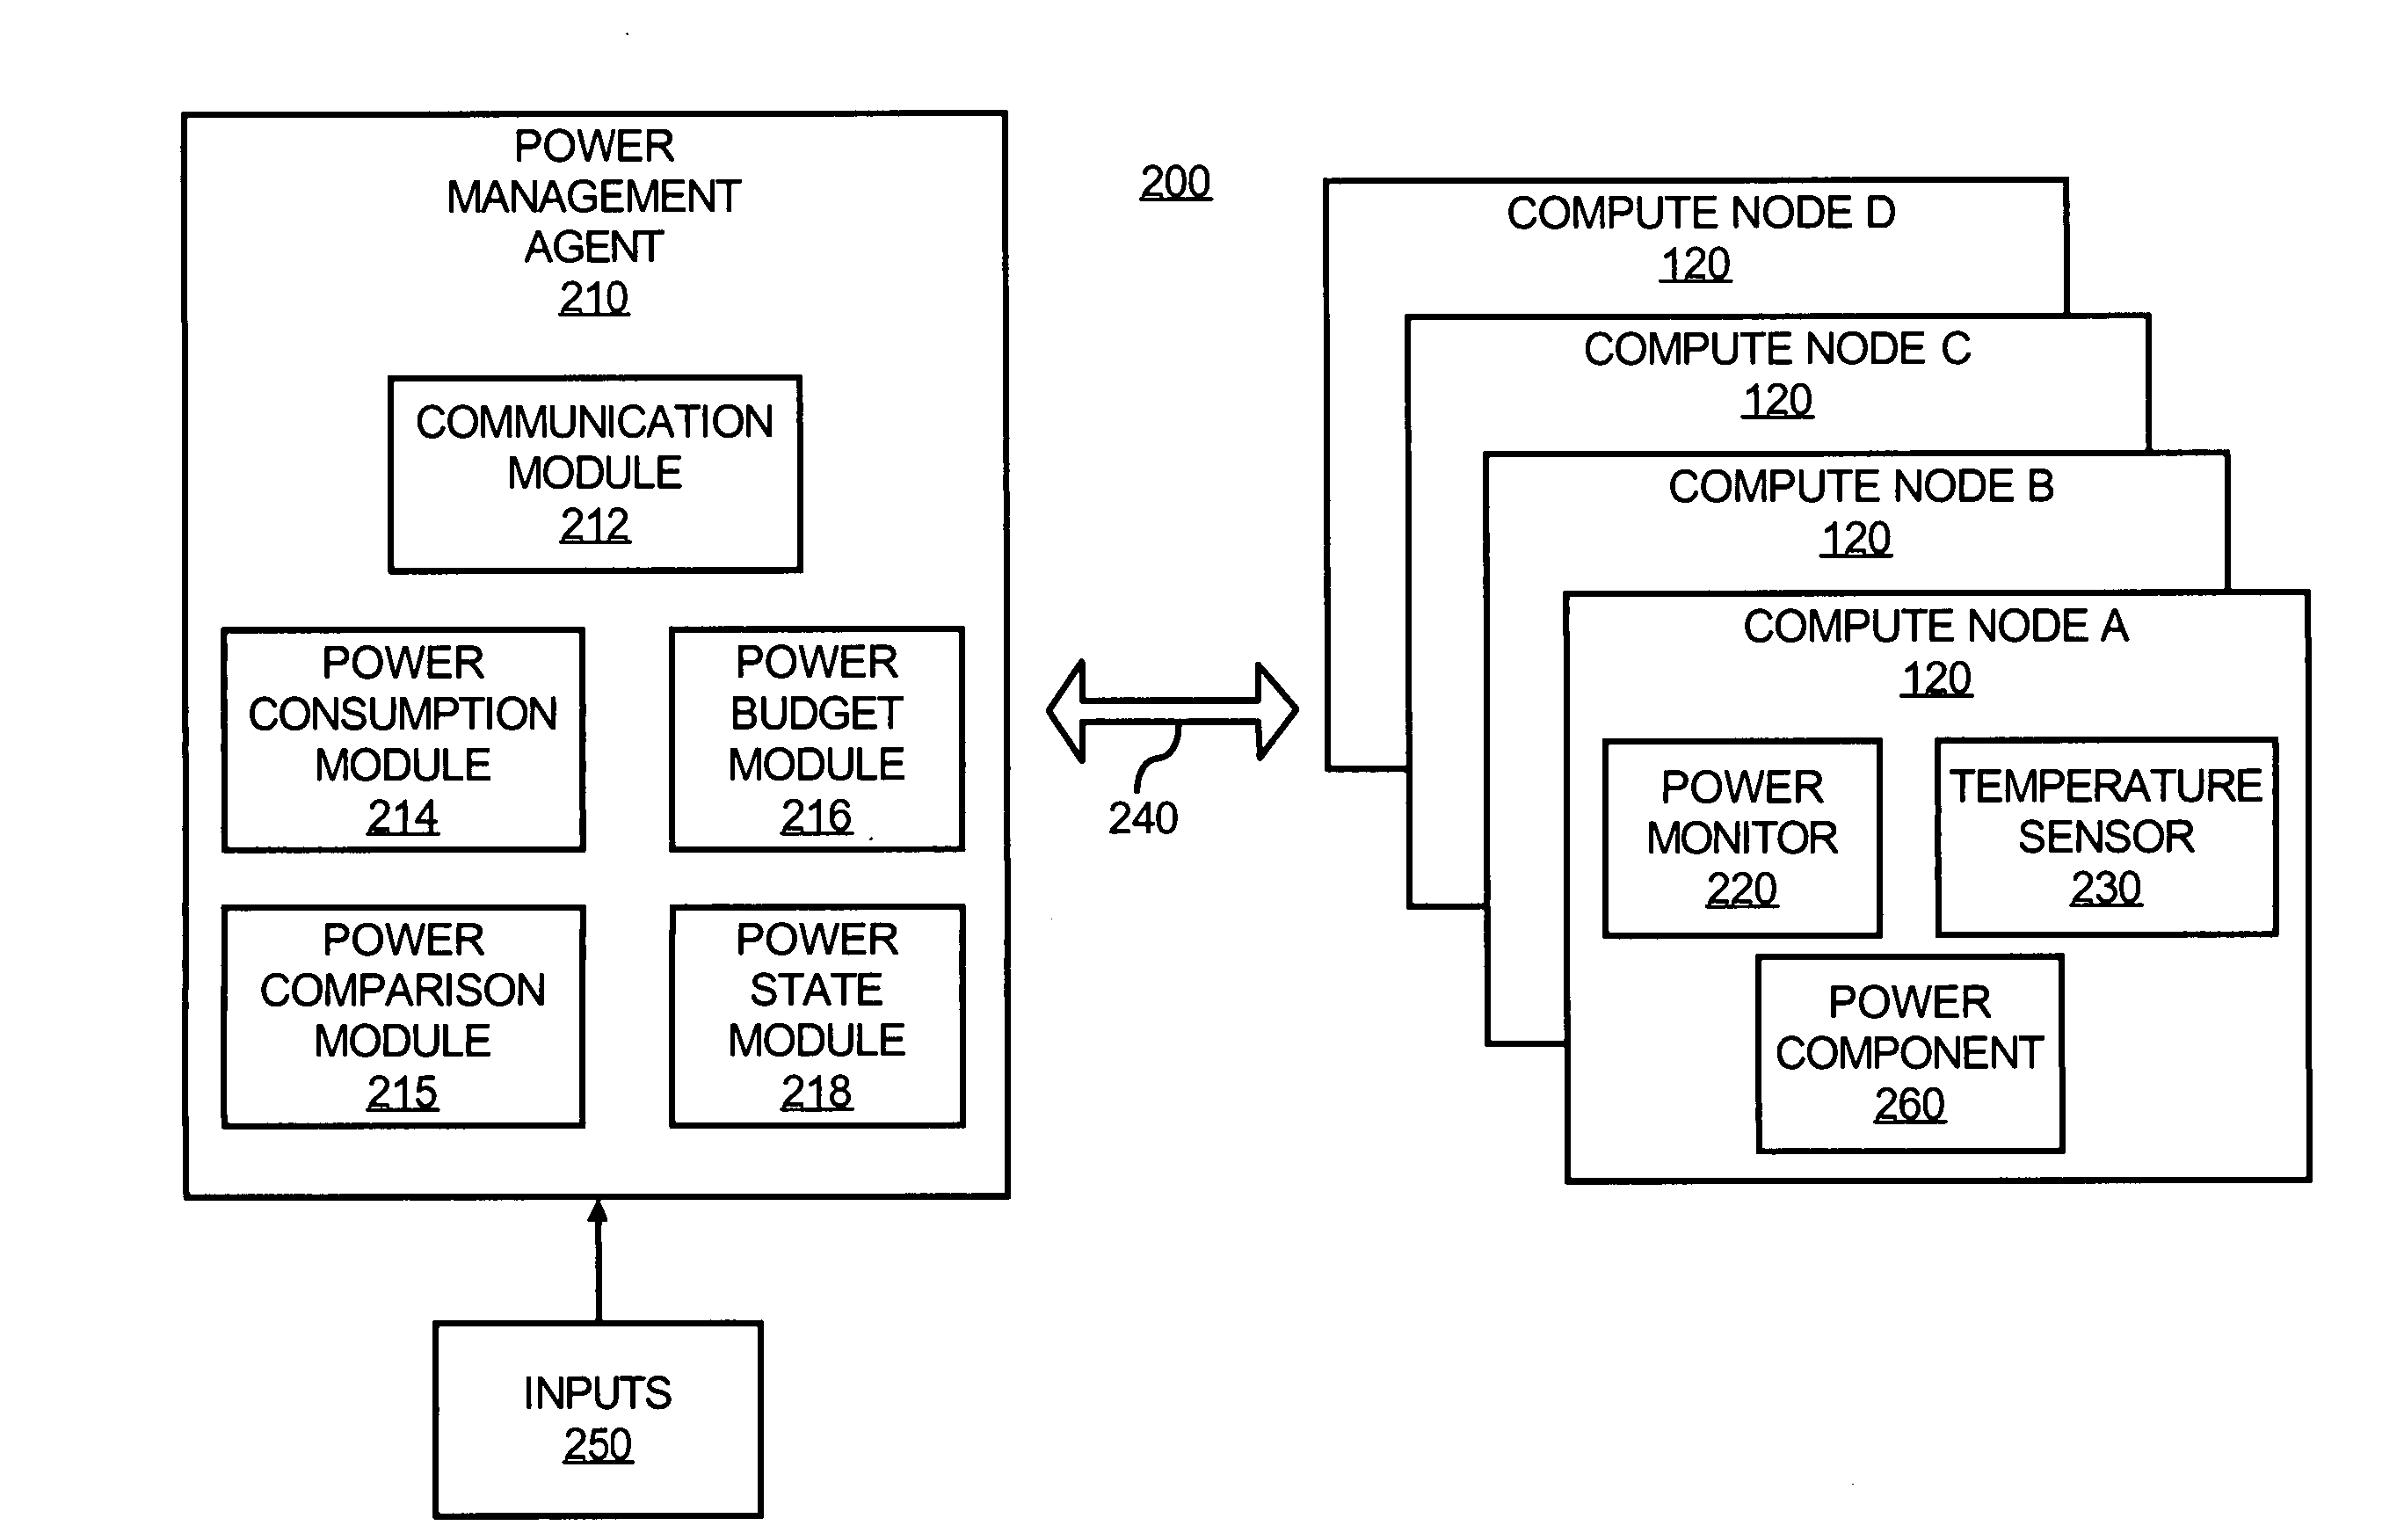 Power consumption management among compute nodes